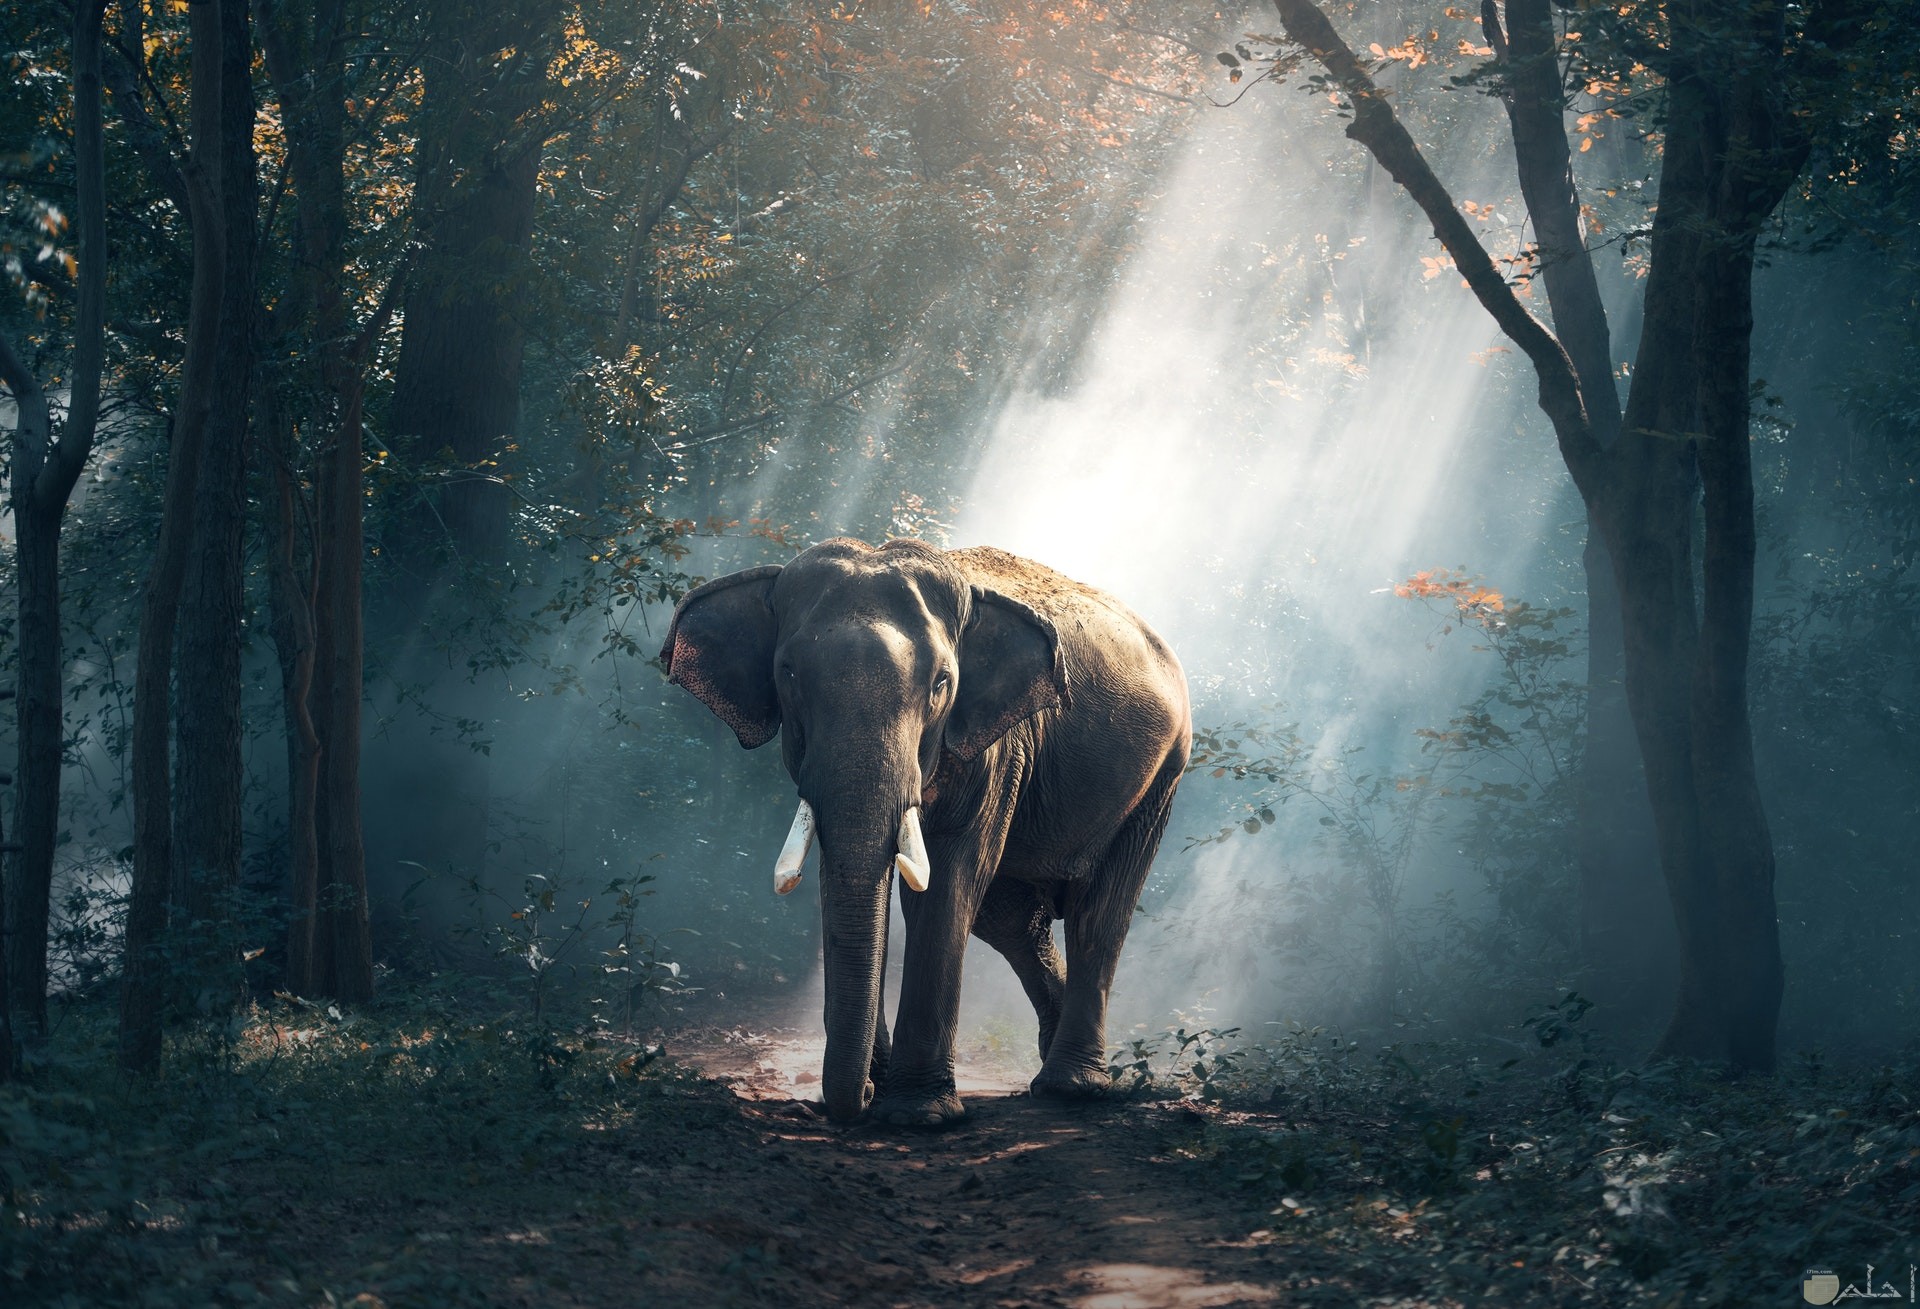 صورة جميلة ومميزة للطبيعة وحيوان الفيل فيها